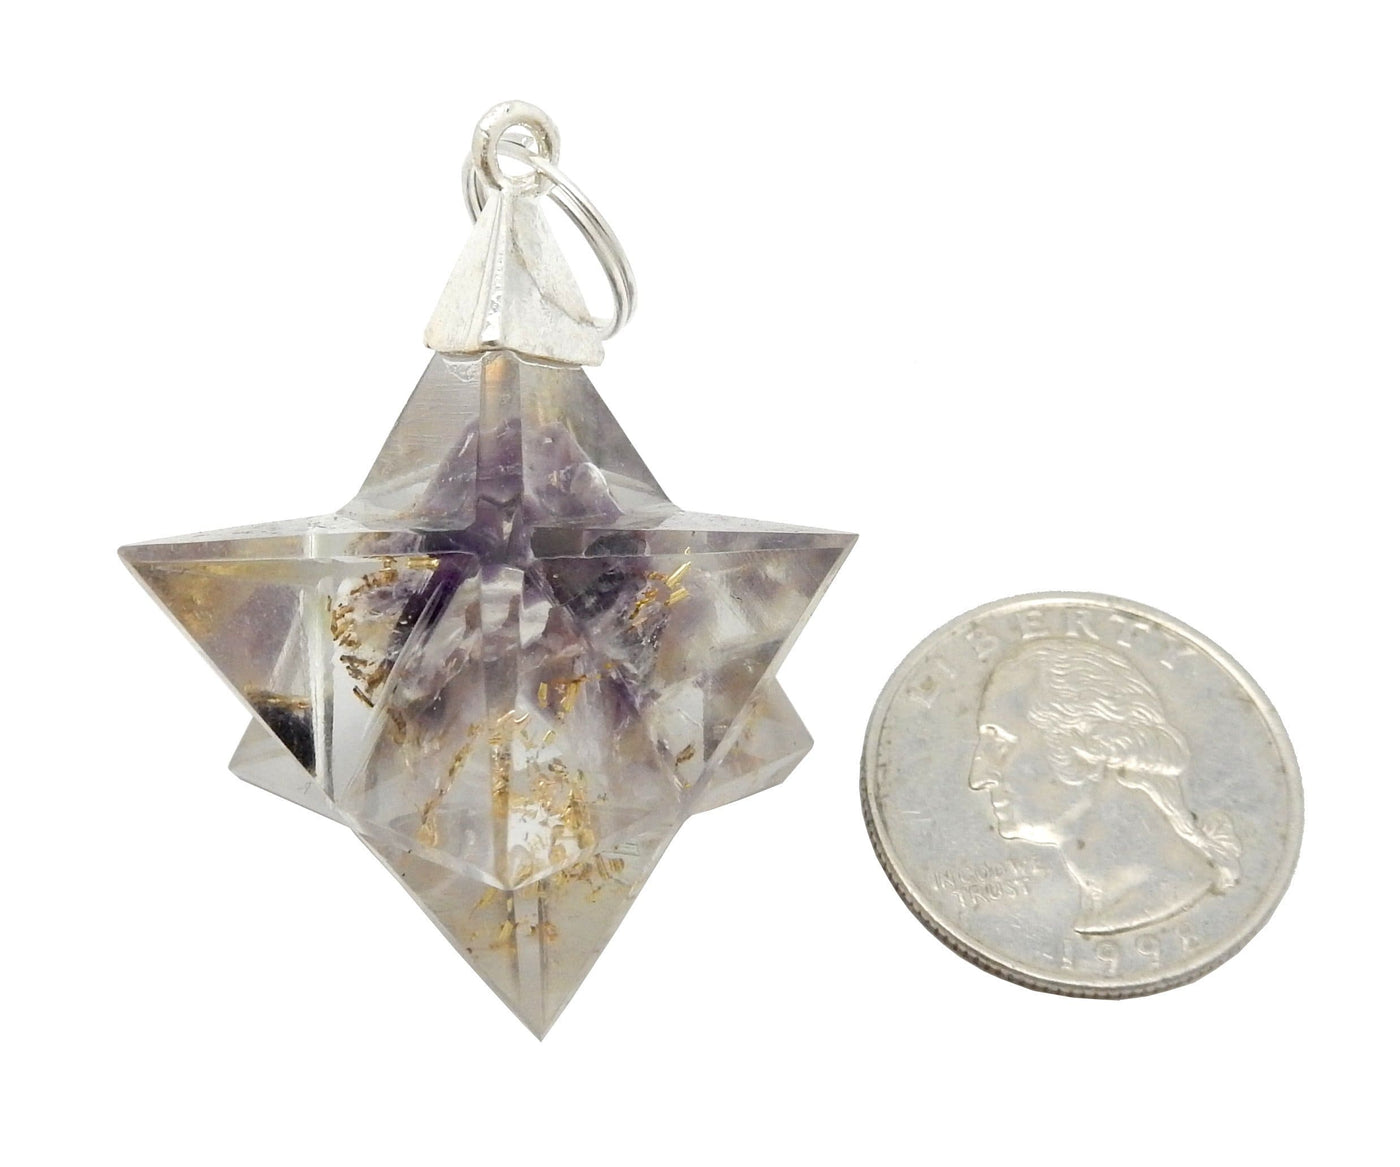 Merkaba - Merkaba Star Orgone Silver Toned Bail Pendant - next to a quarter